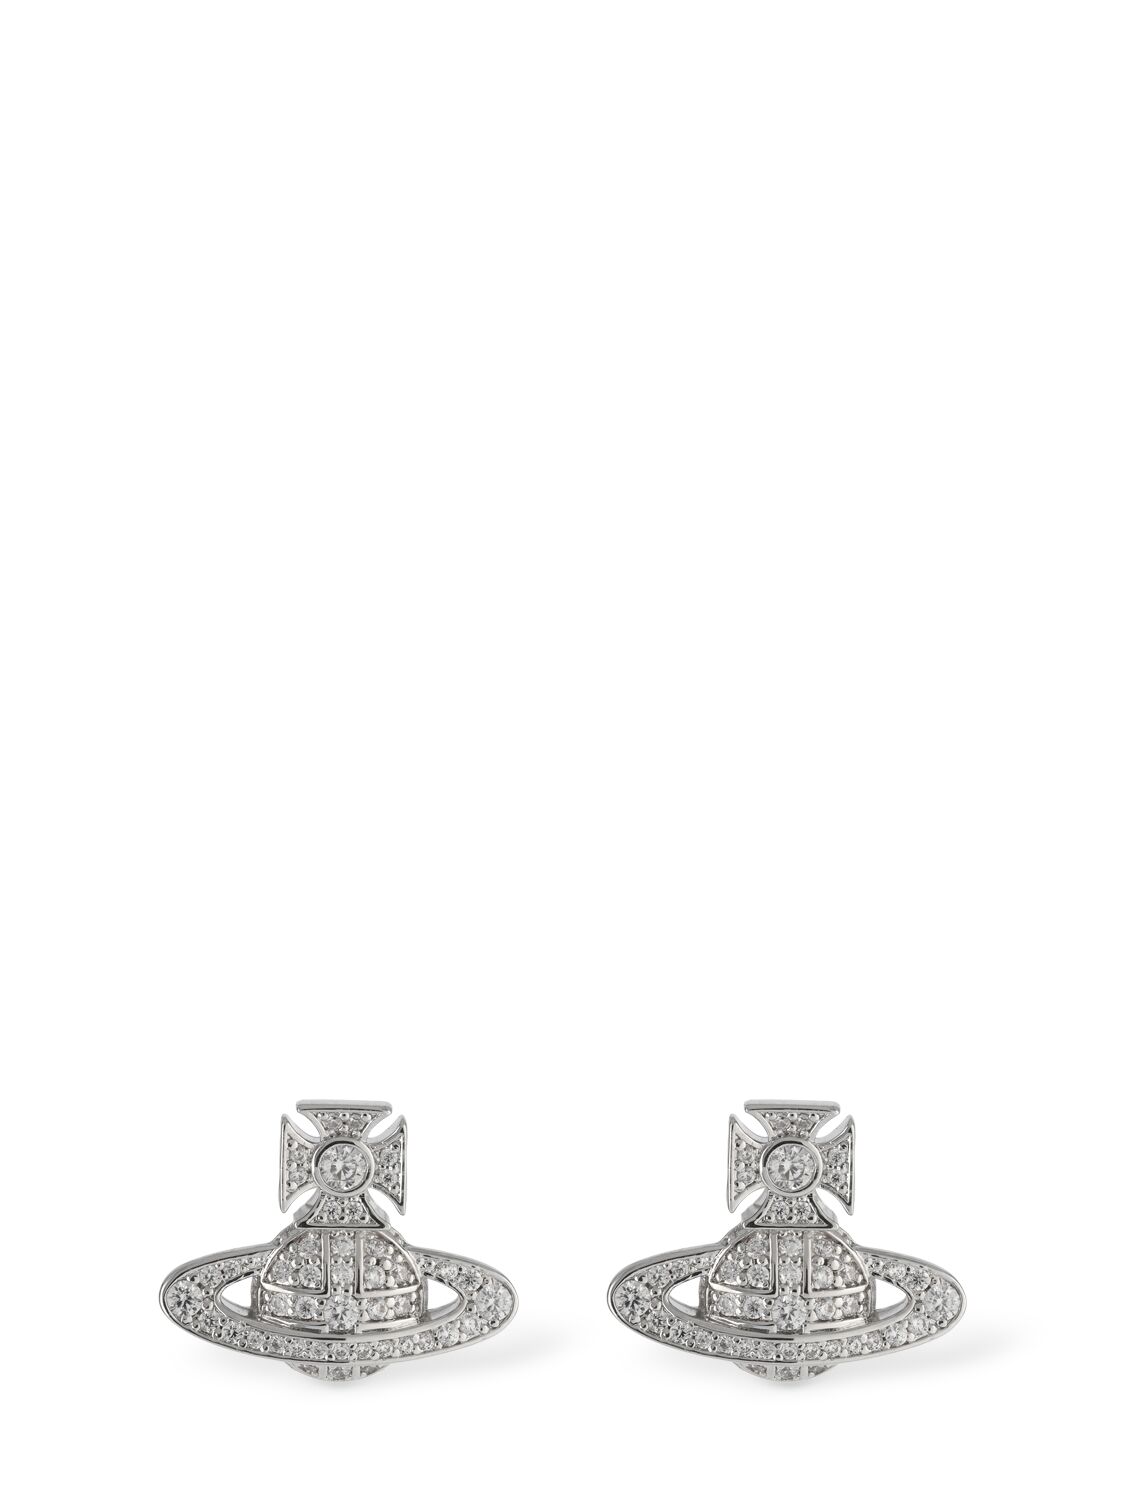 Vivienne Westwood Carmela Bas Relief Stud Crystal Earrings In Silver